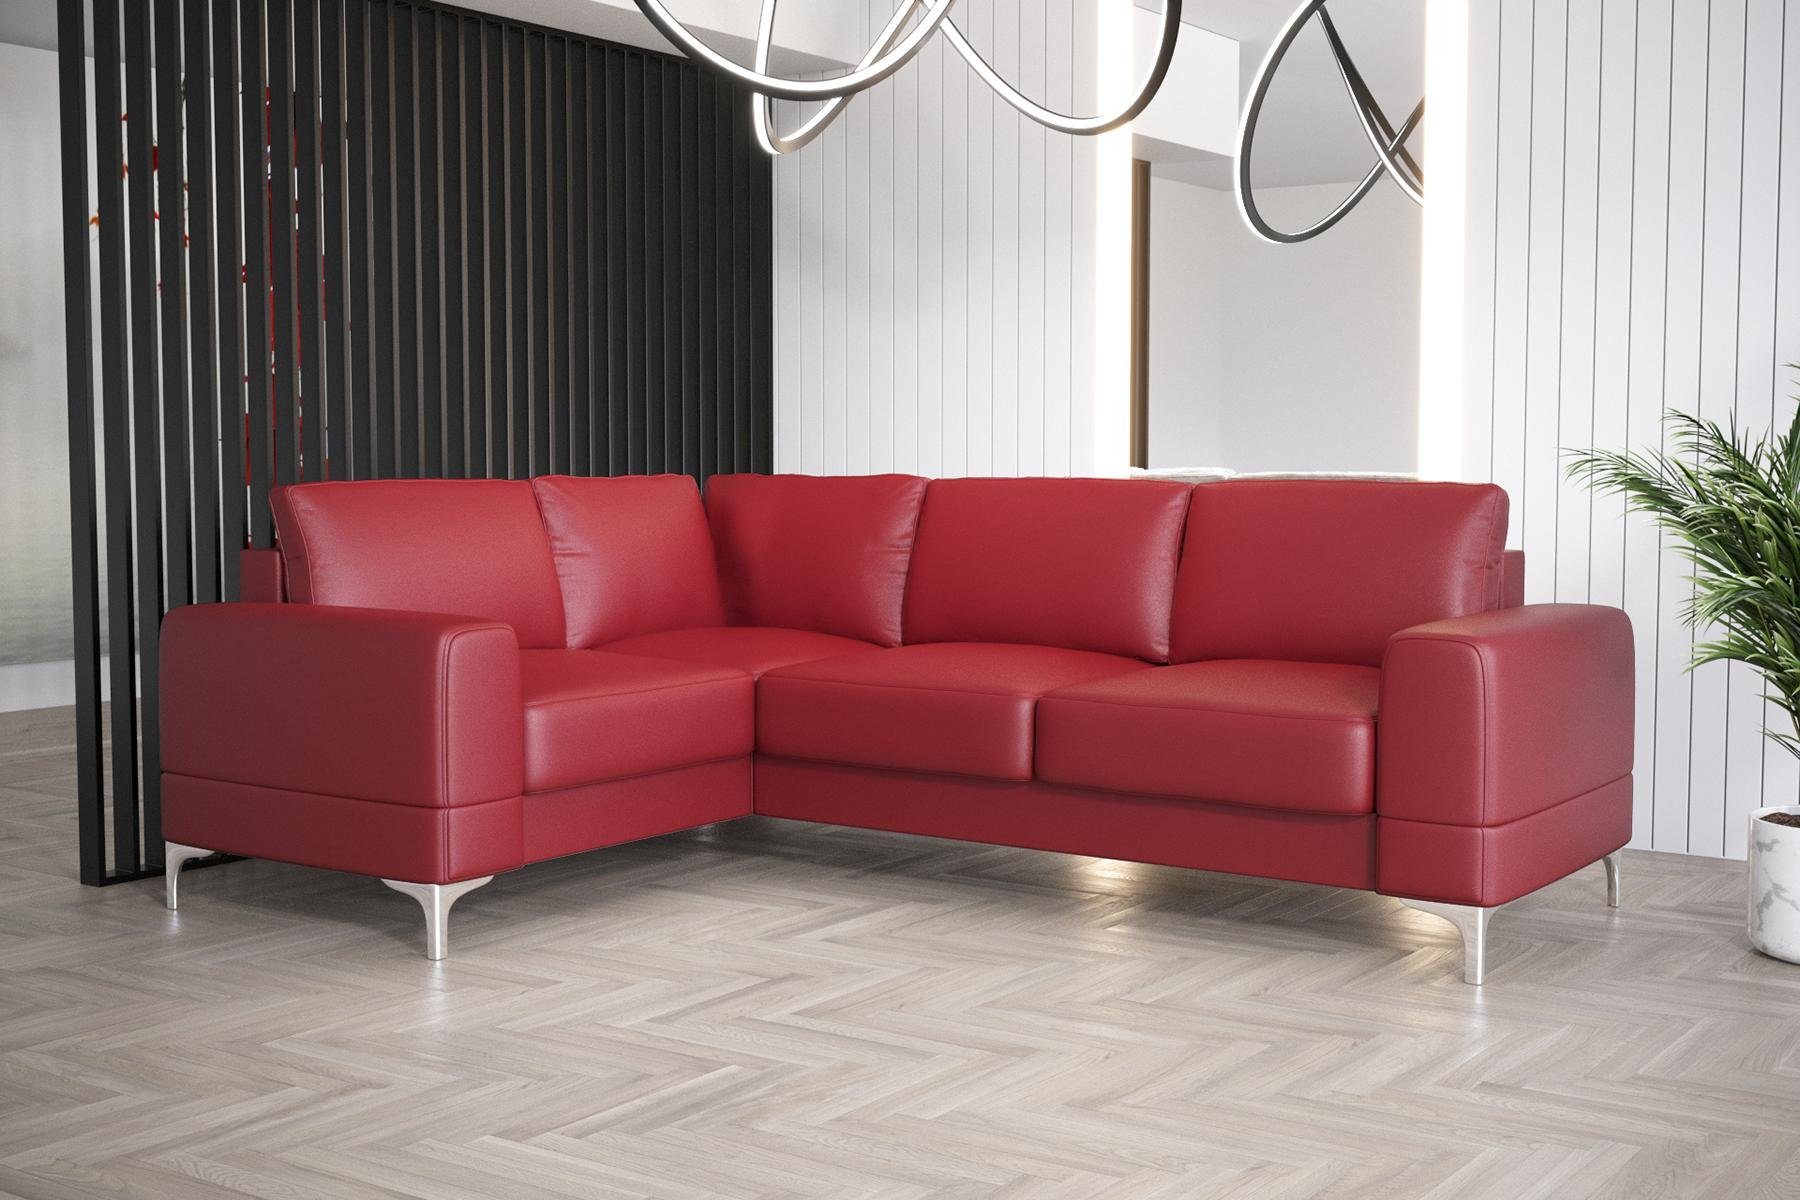 Luxus JVmoebel Couch, Ecksofa Rot Wohnzimmer Europe Ecksofa in Möbel Modern L-Form Made Sofa